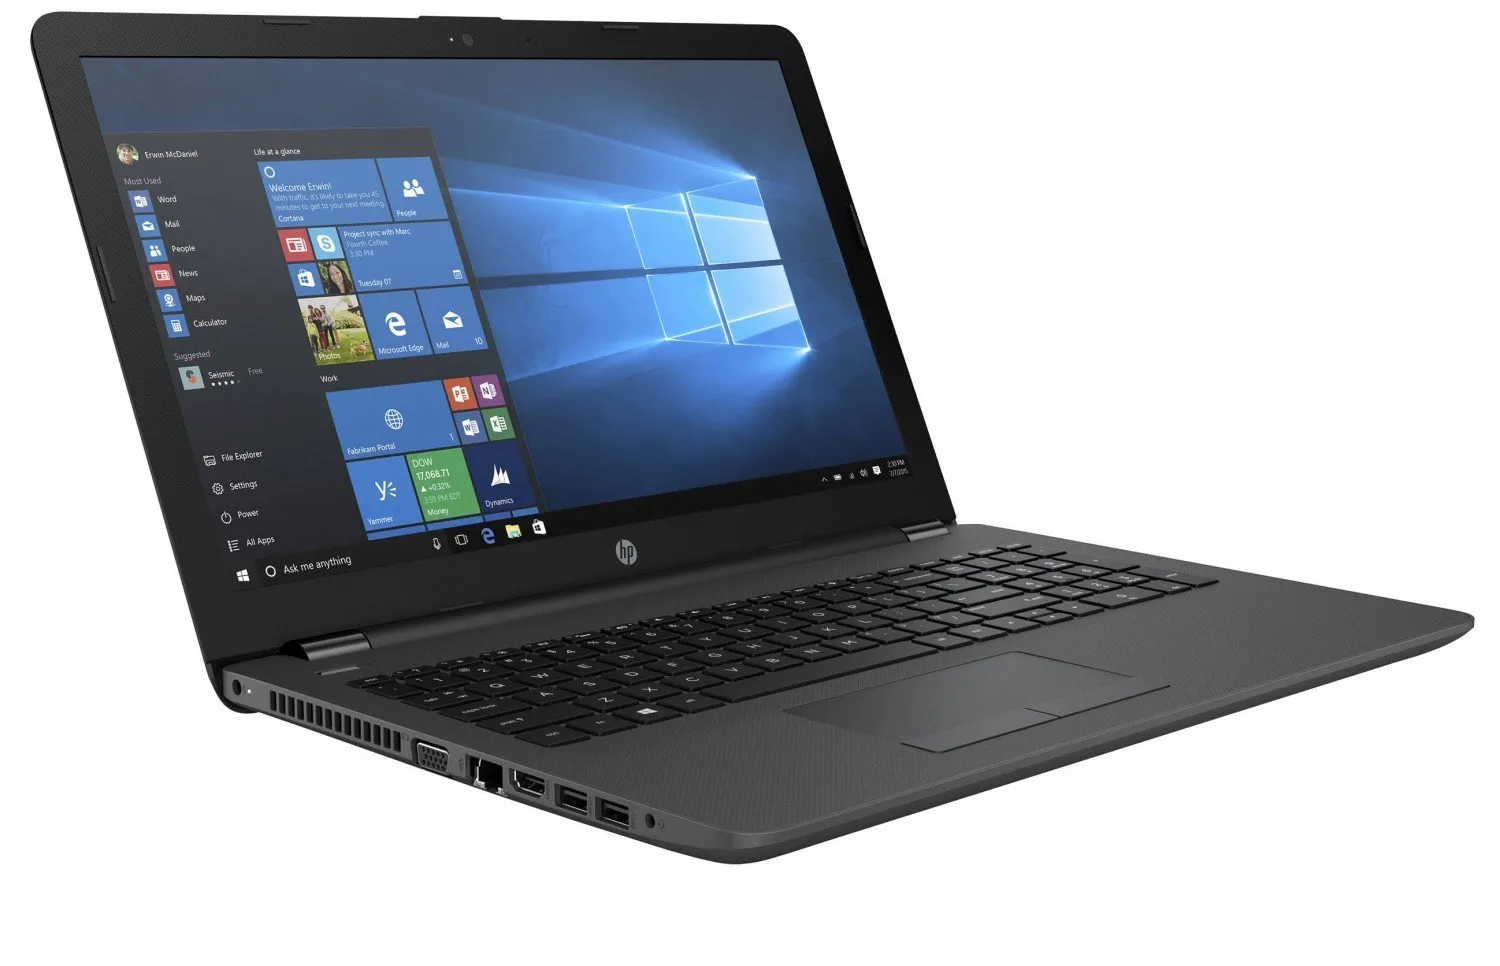 Ноутбук HP 455 G1 /AMD A10-5750/8 GB DDR4/ 500GB HDD /15.6" HD LED/ 2GB AMD Radeon HD 8750M/DVD/RUS+ Bag#2